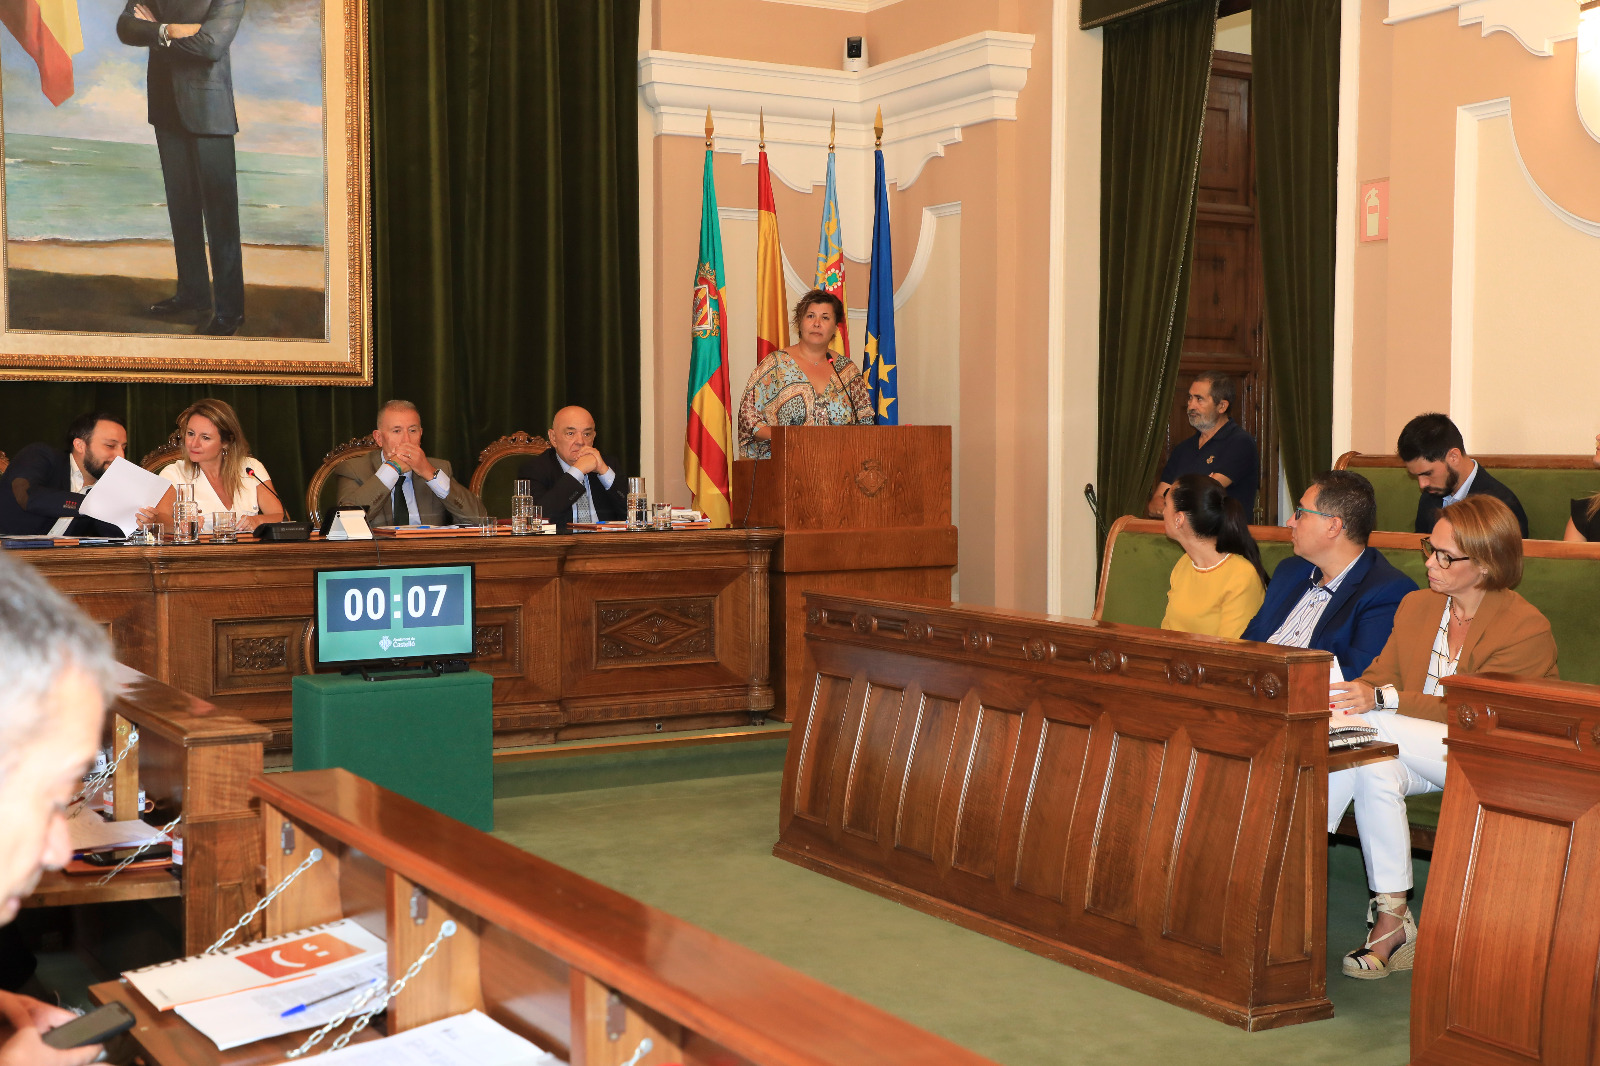 La Junta Electoral prohibeix a Begoña Carrasco la trobada veïnal per incomplir la llei